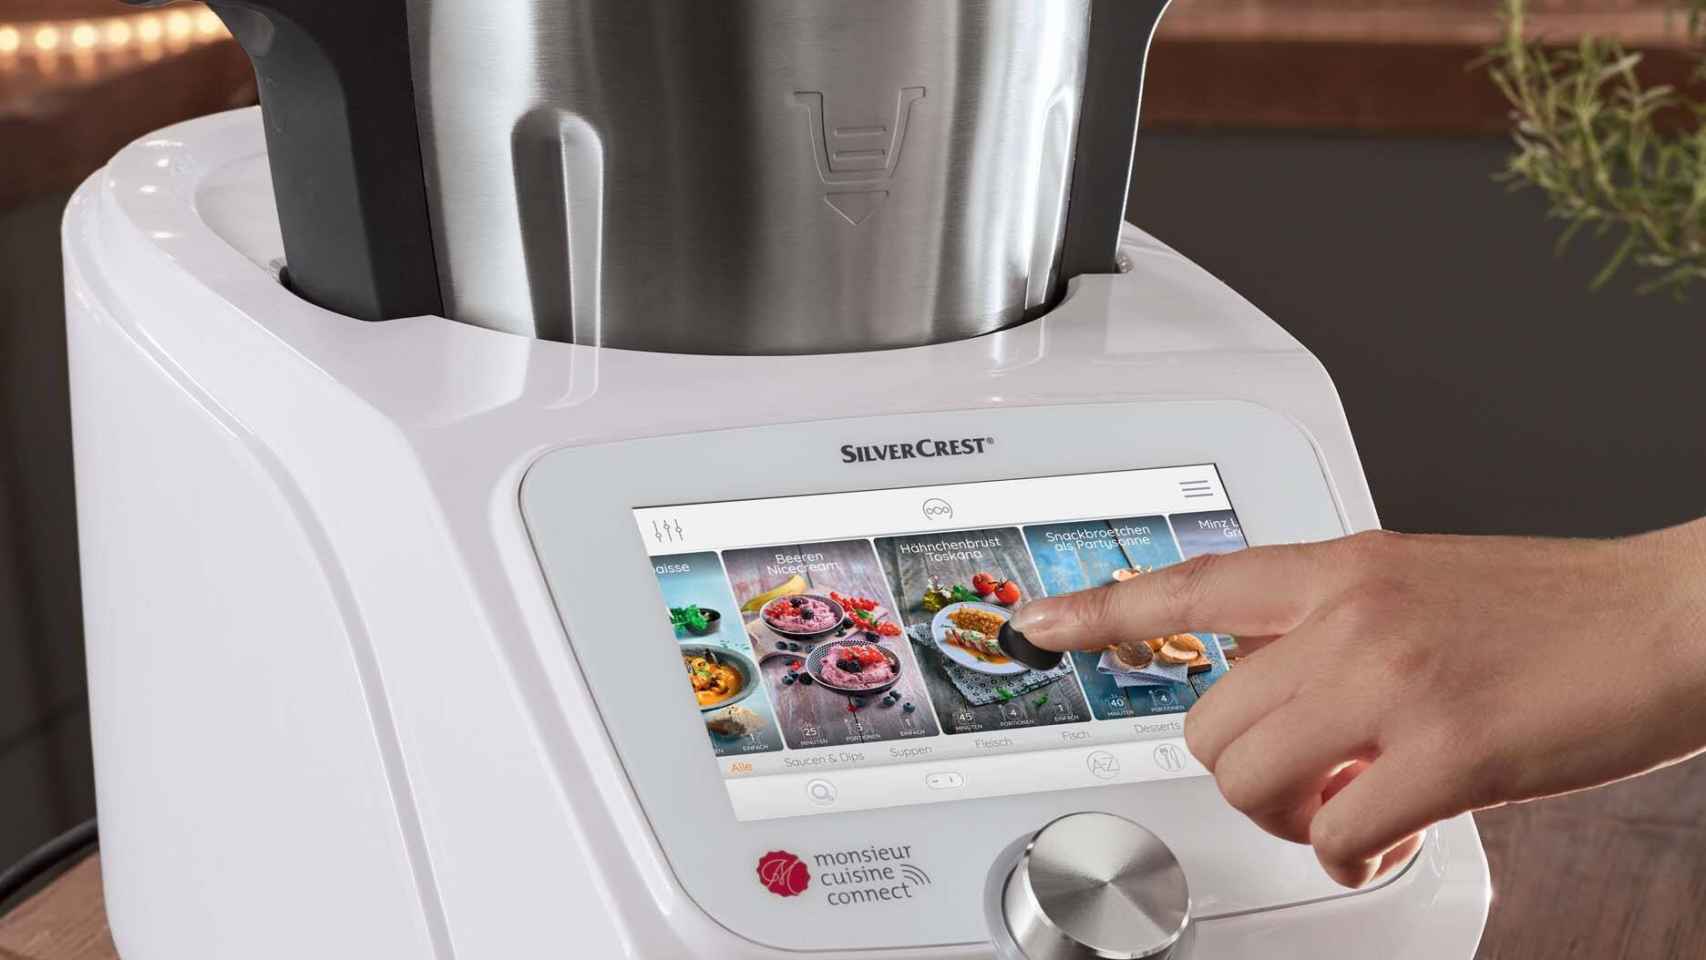 El robot Monsieur Cuisine Connect de Lidl vuelve a estar a la venta